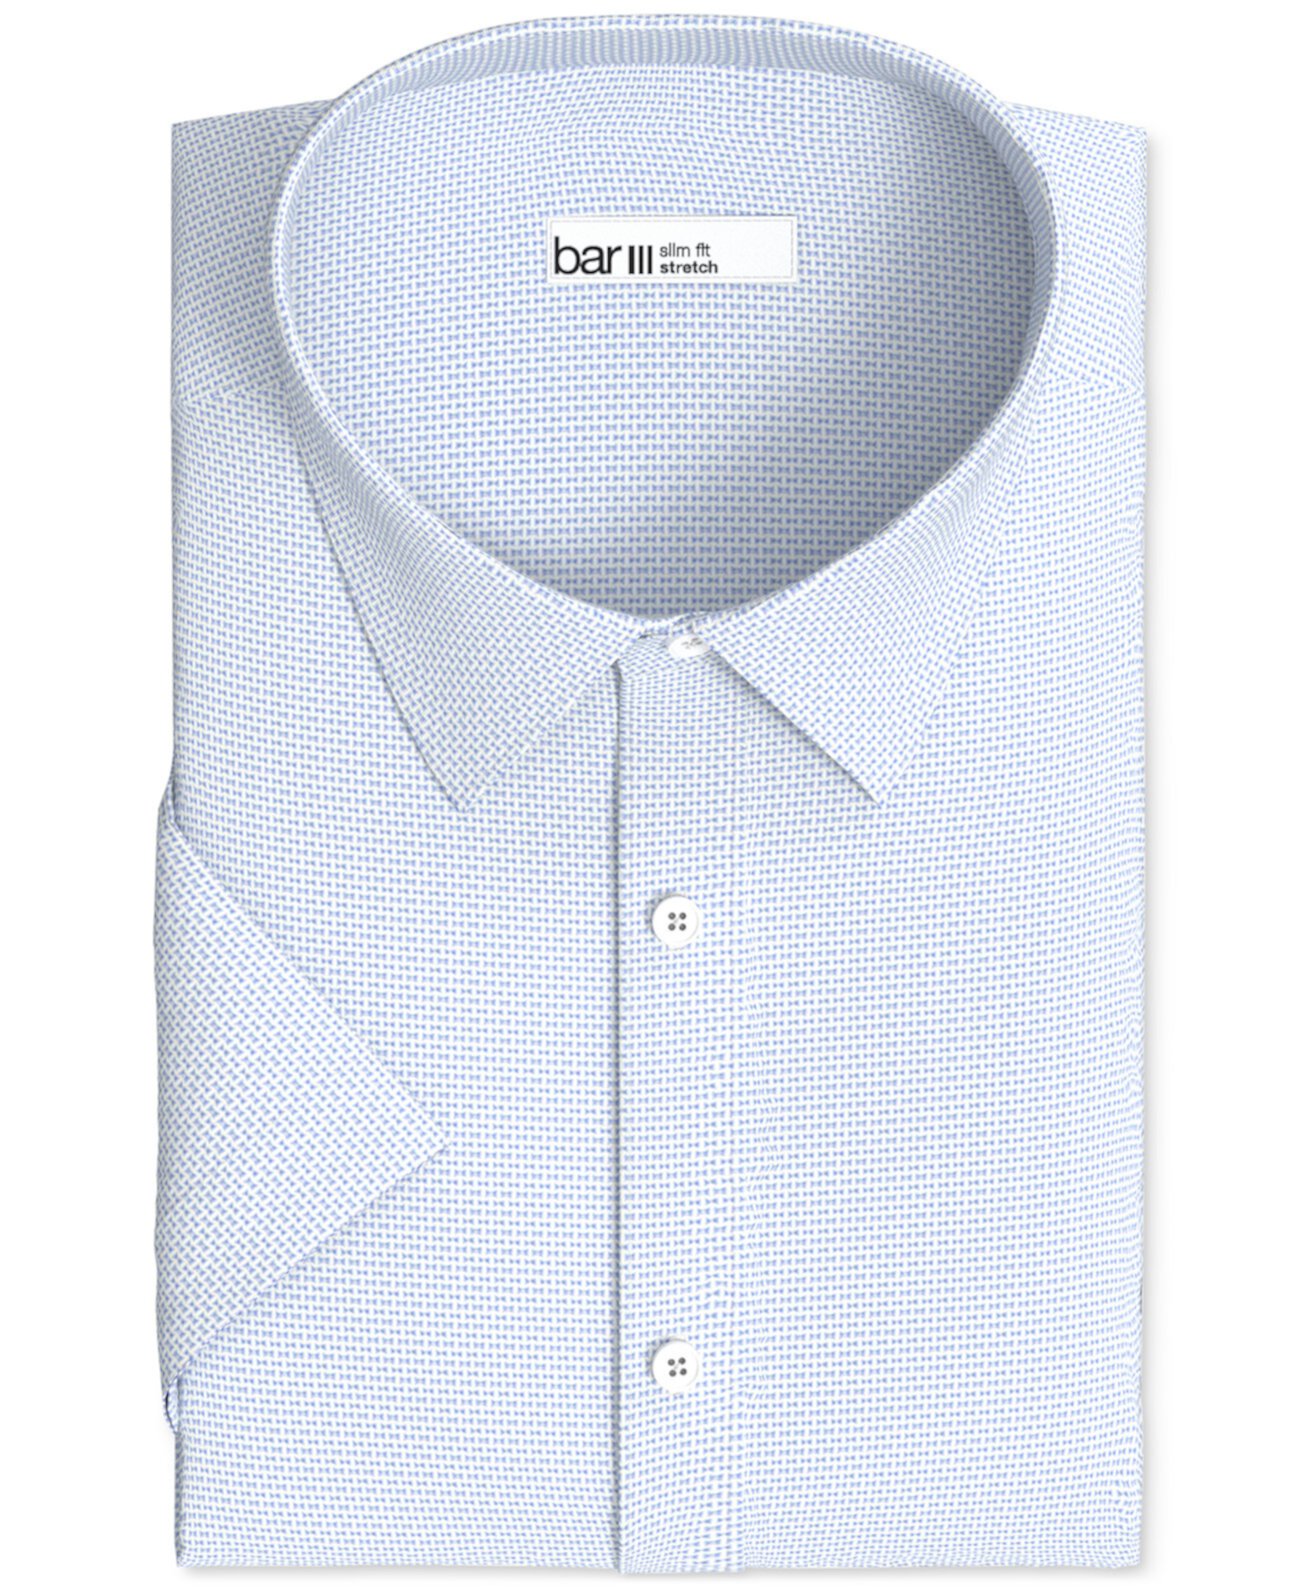 Мужская приталенная классическая рубашка с короткими рукавами и эластичной текстурой, созданная для Macy's Bar III